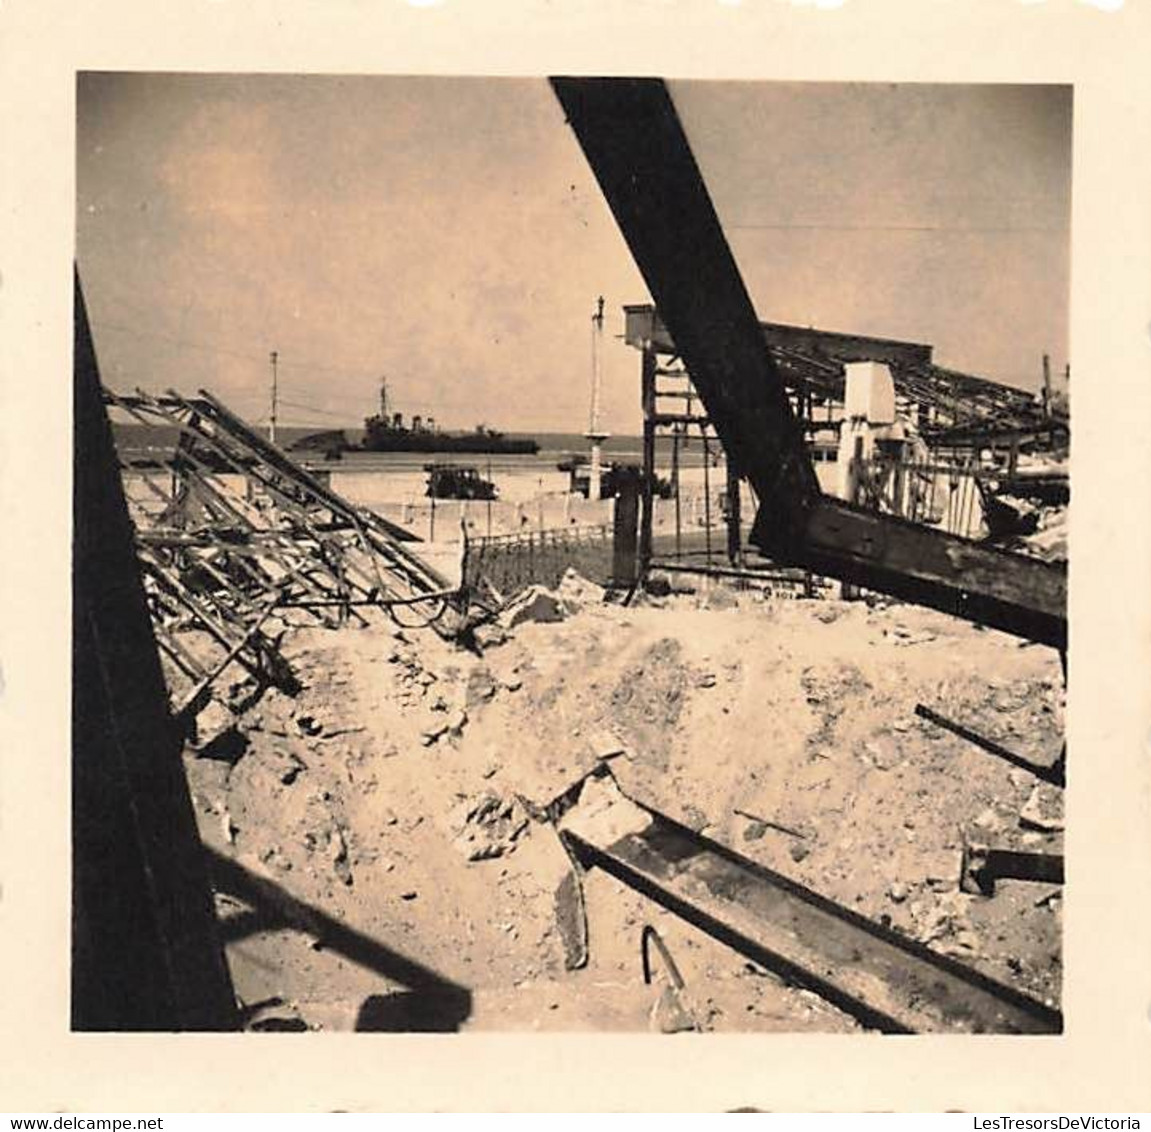 Lot de 7 petites photographies de dunkerque detruit pendant la guerre - ruines - bombardements